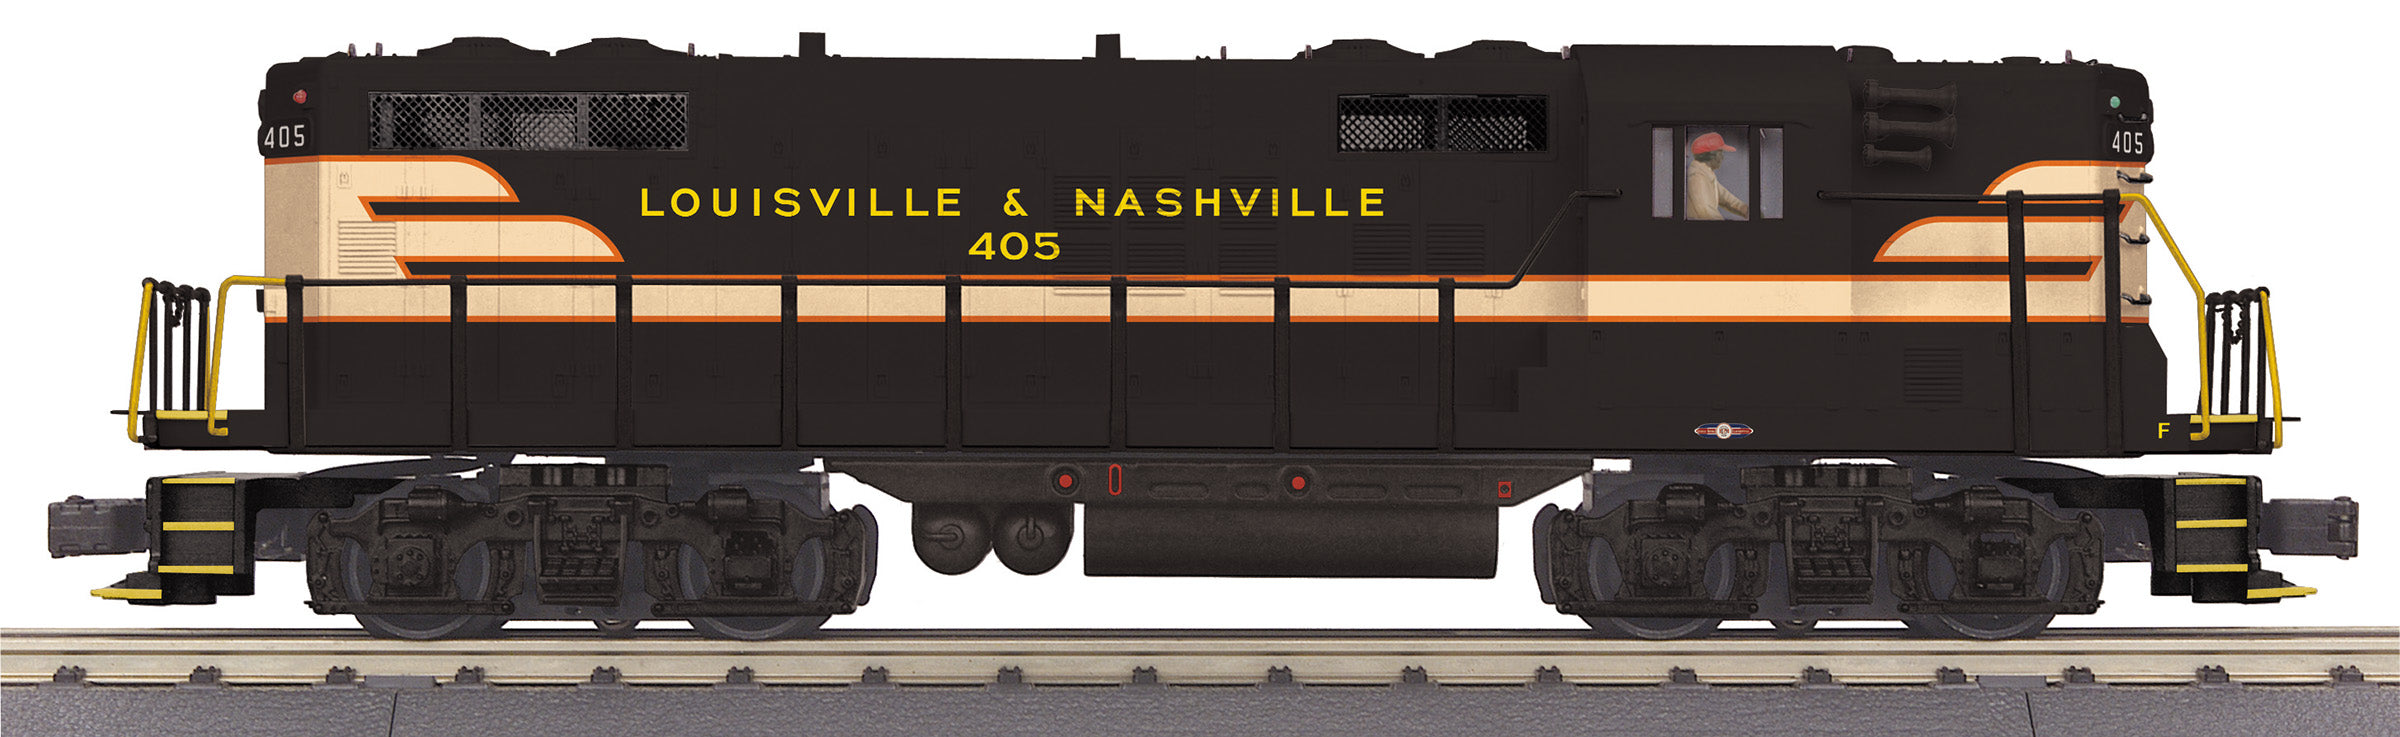 MTH 20-21743-1 - GP-7 Diesel Engine "Louisville & Nashville" #405 w/ PS3 - Custom Run for MrMuffin'sTrains